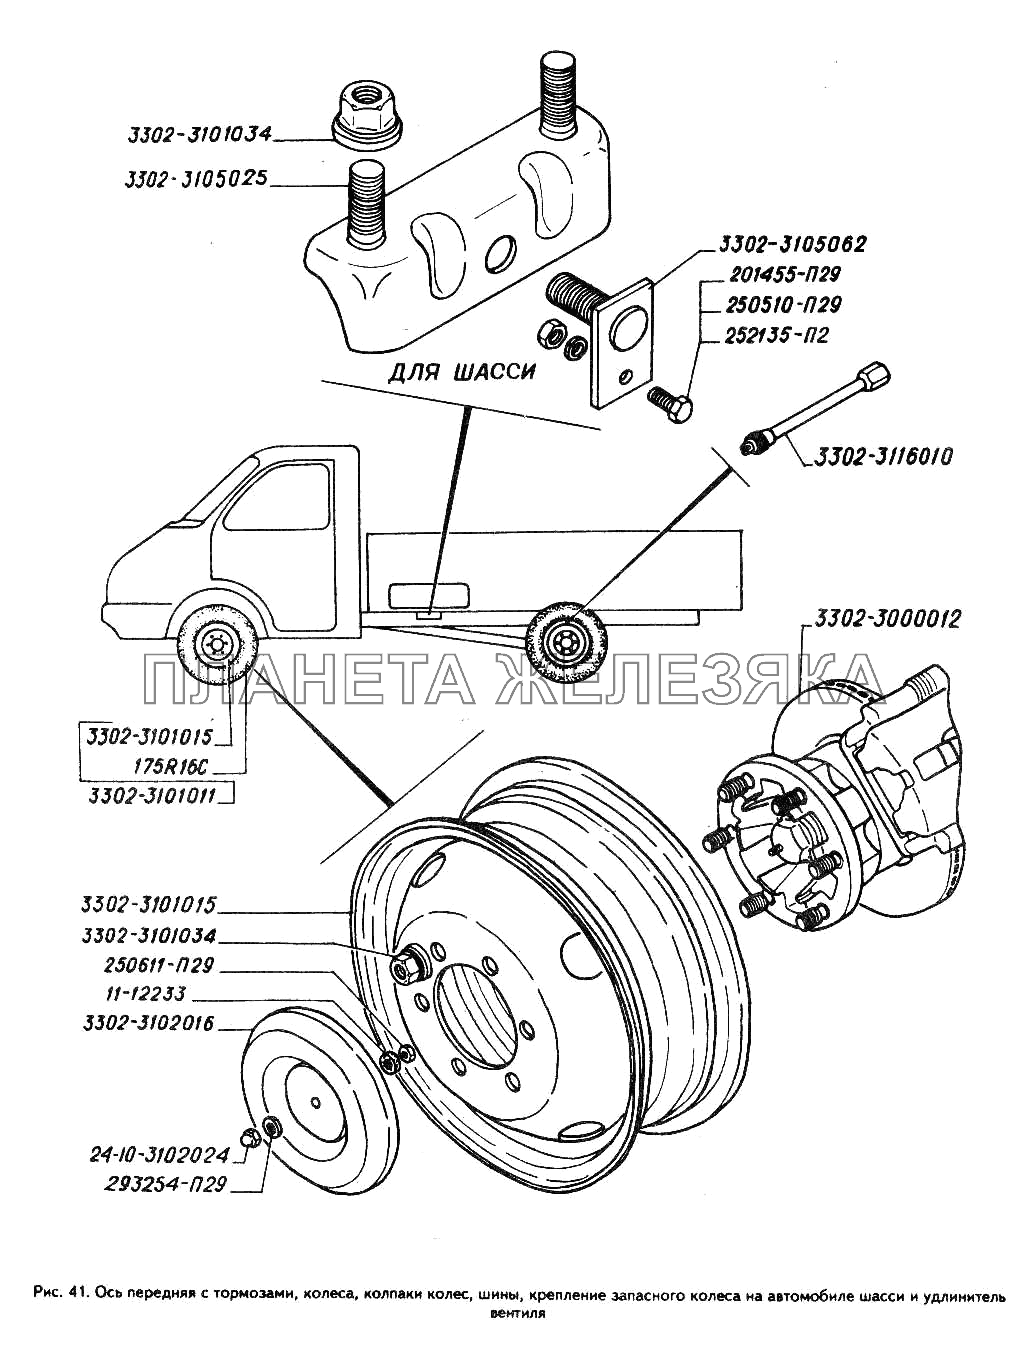 Колеса, колпаки колес, шины, крепление запасного колеса на автомобиле шасси и удлинитель вентиля, ось передняя с тормозами ГАЗ-3302 (ГАЗель)